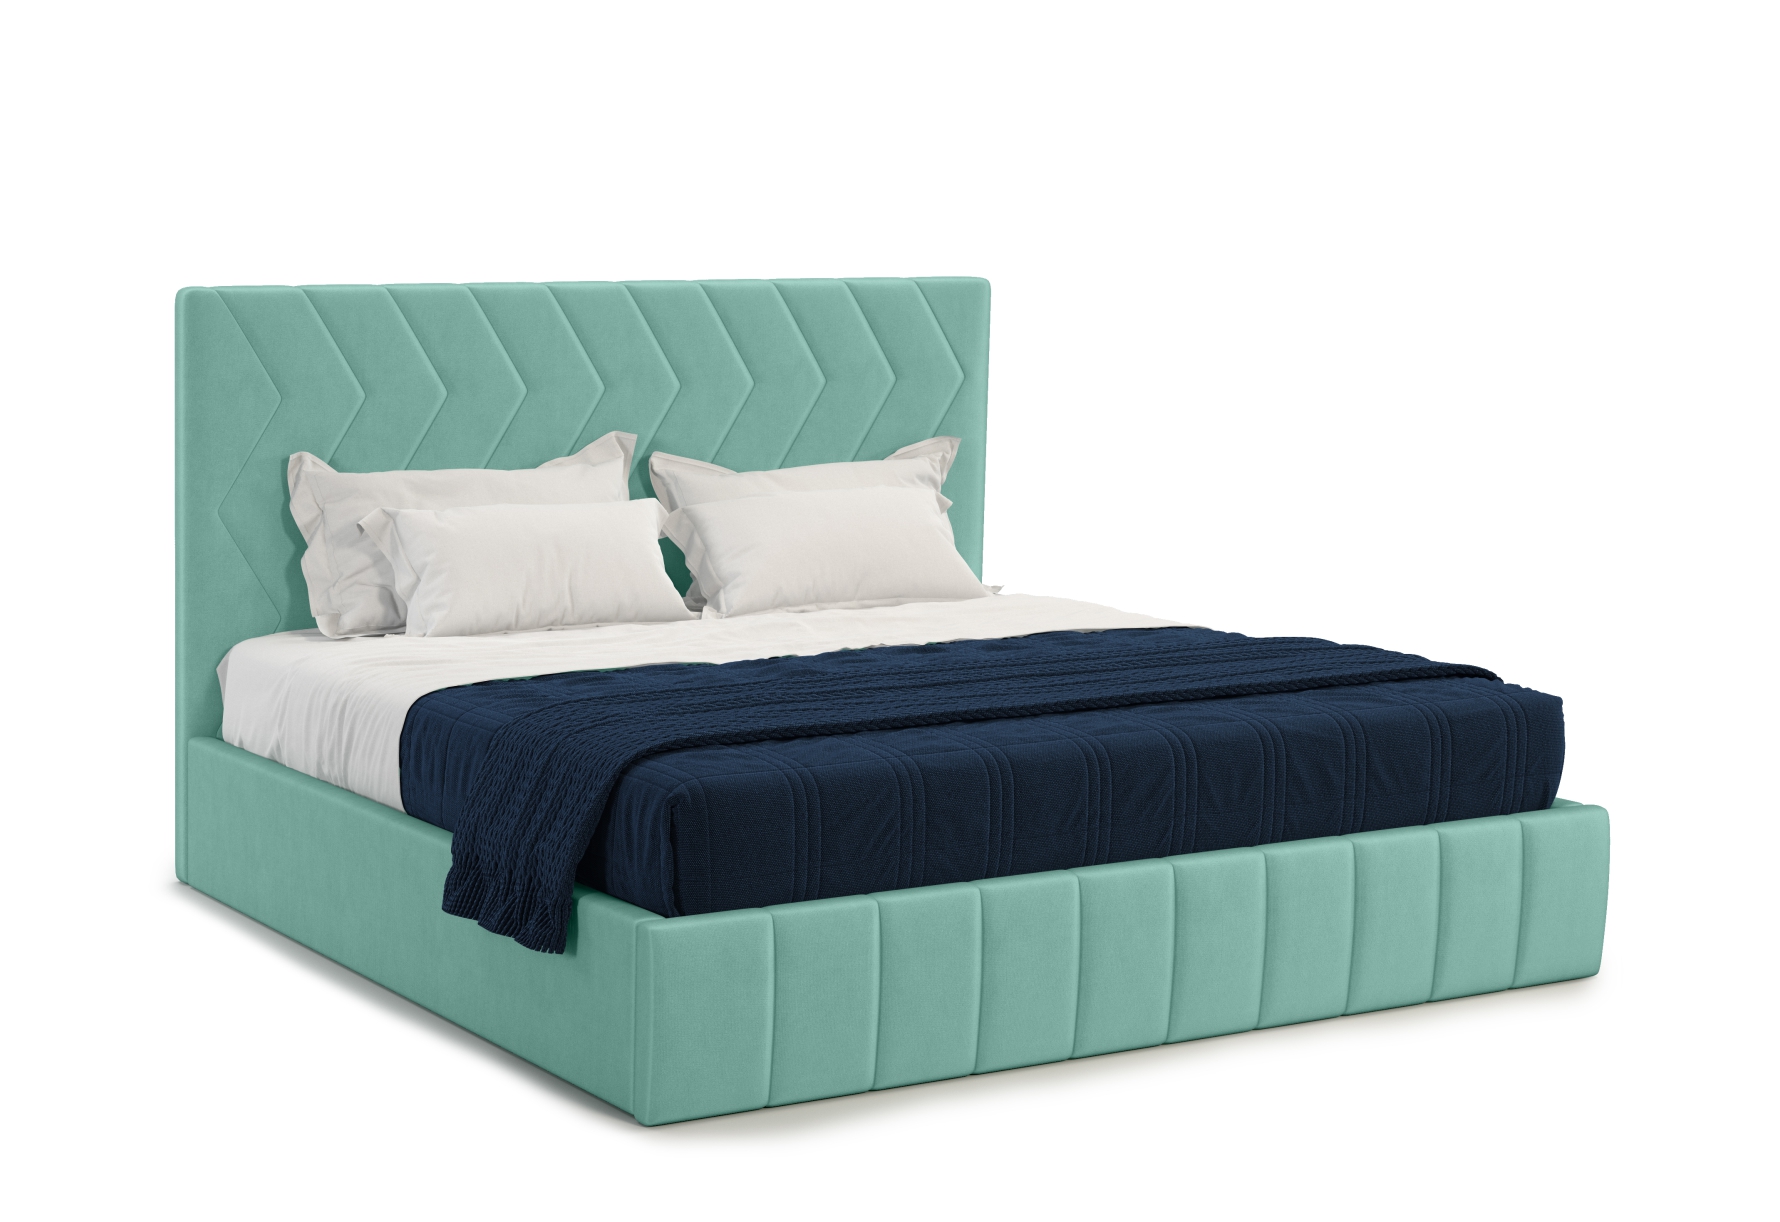 Мягкая кровать Грейс 180*200 (подъемник), цвет bingo mint